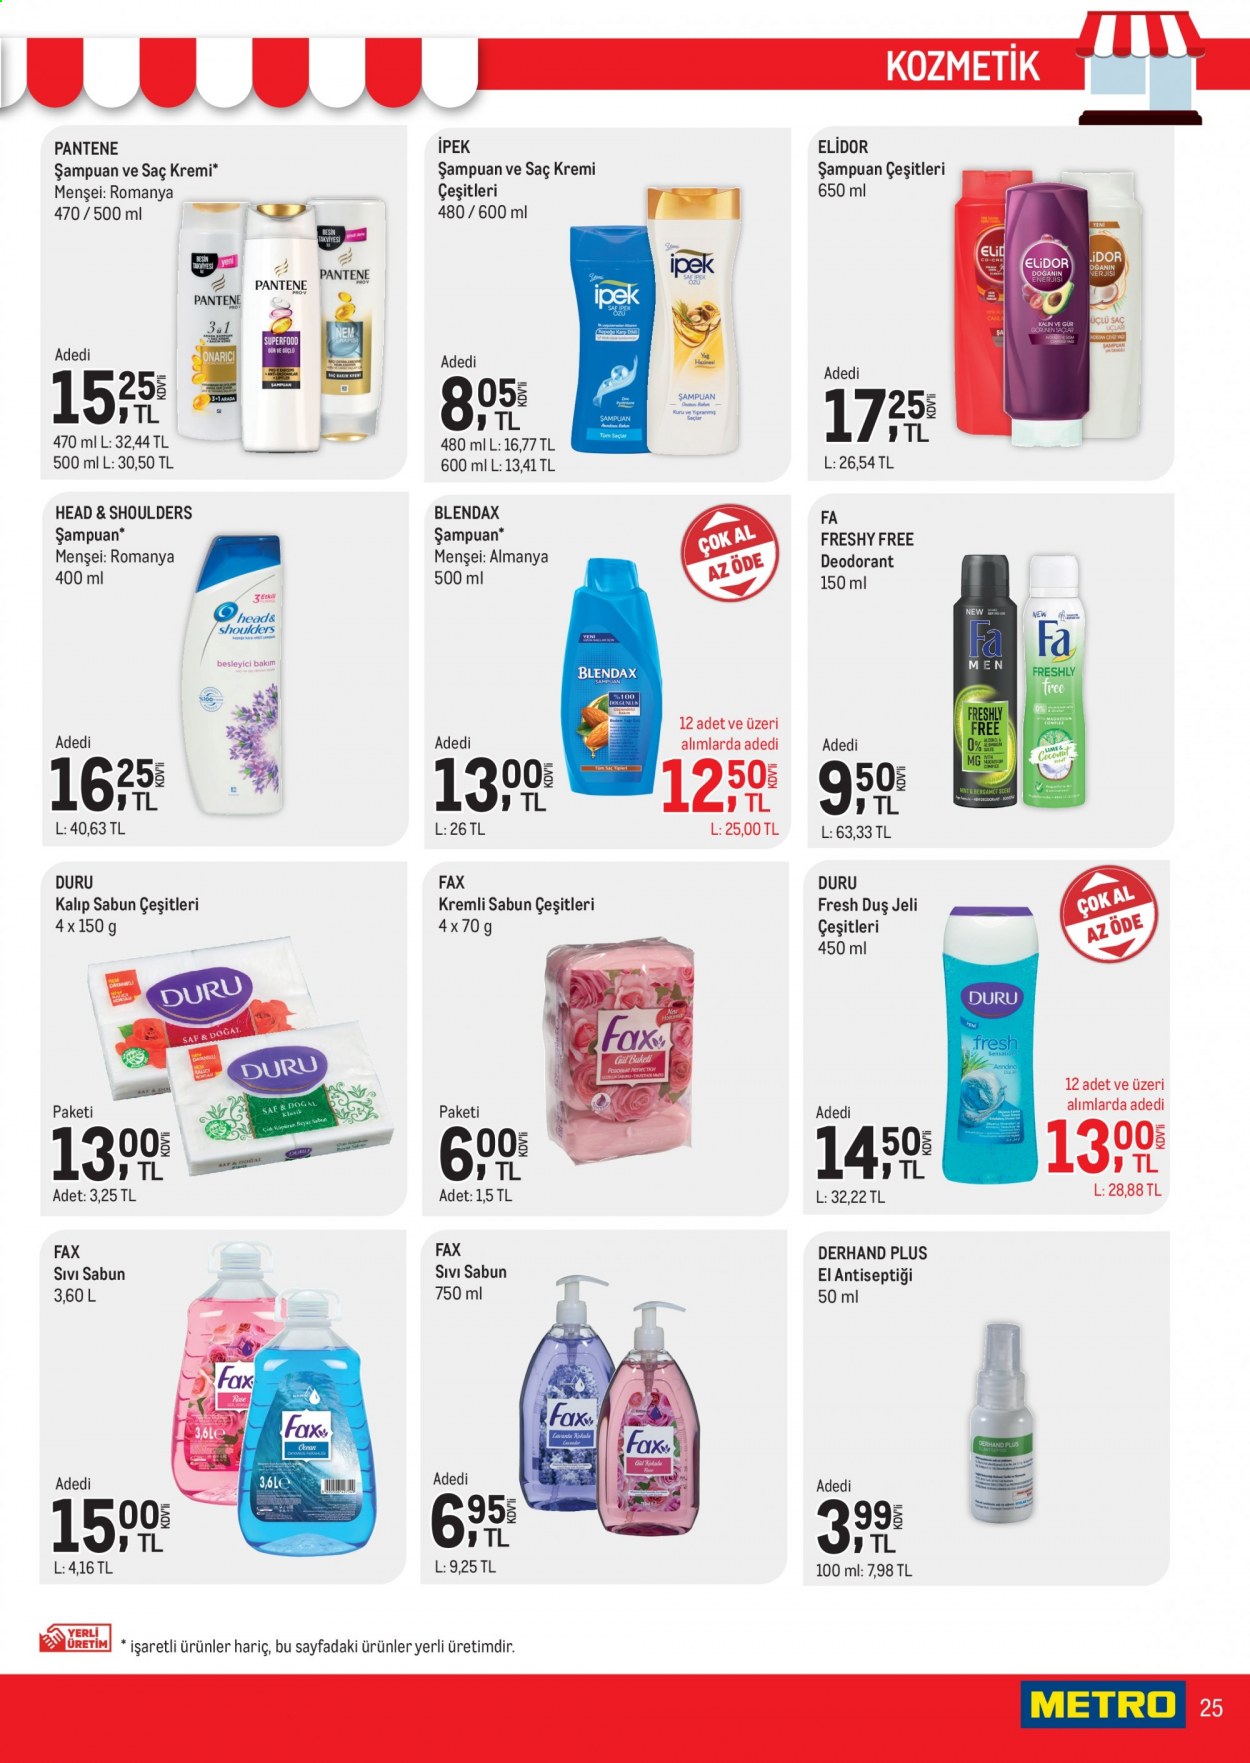 thumbnail - Metro aktüel ürünler, broşür  - 5.1.2021 - 5.17.2021 - Satıştaki ürünler - sabun, şampuan, sıvı sabunu, Head & Shoulders, duş jeli, kremi, saç kremi, Pantene, deodorant. Sayfa 25.